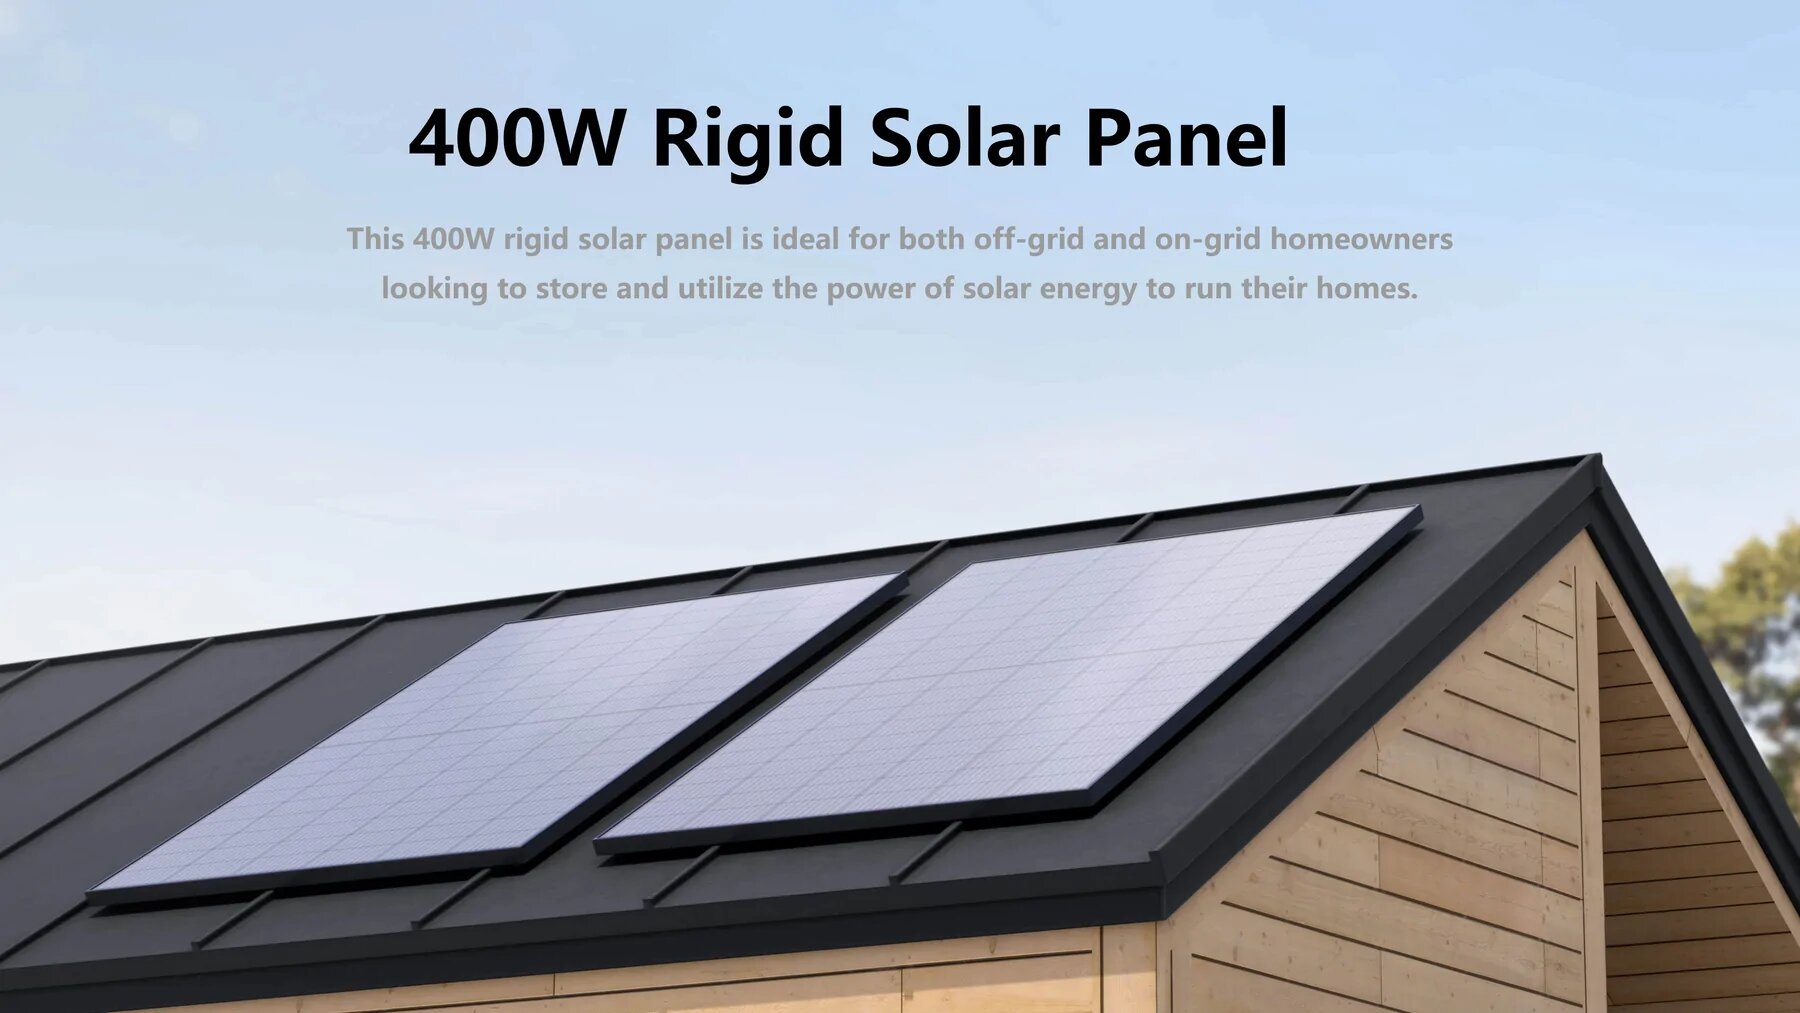 100% sicheres Einkaufen Zuverlässige Garantie Kostenloser Versand Starrrahmen-Solarmodule EcoFlow 400W